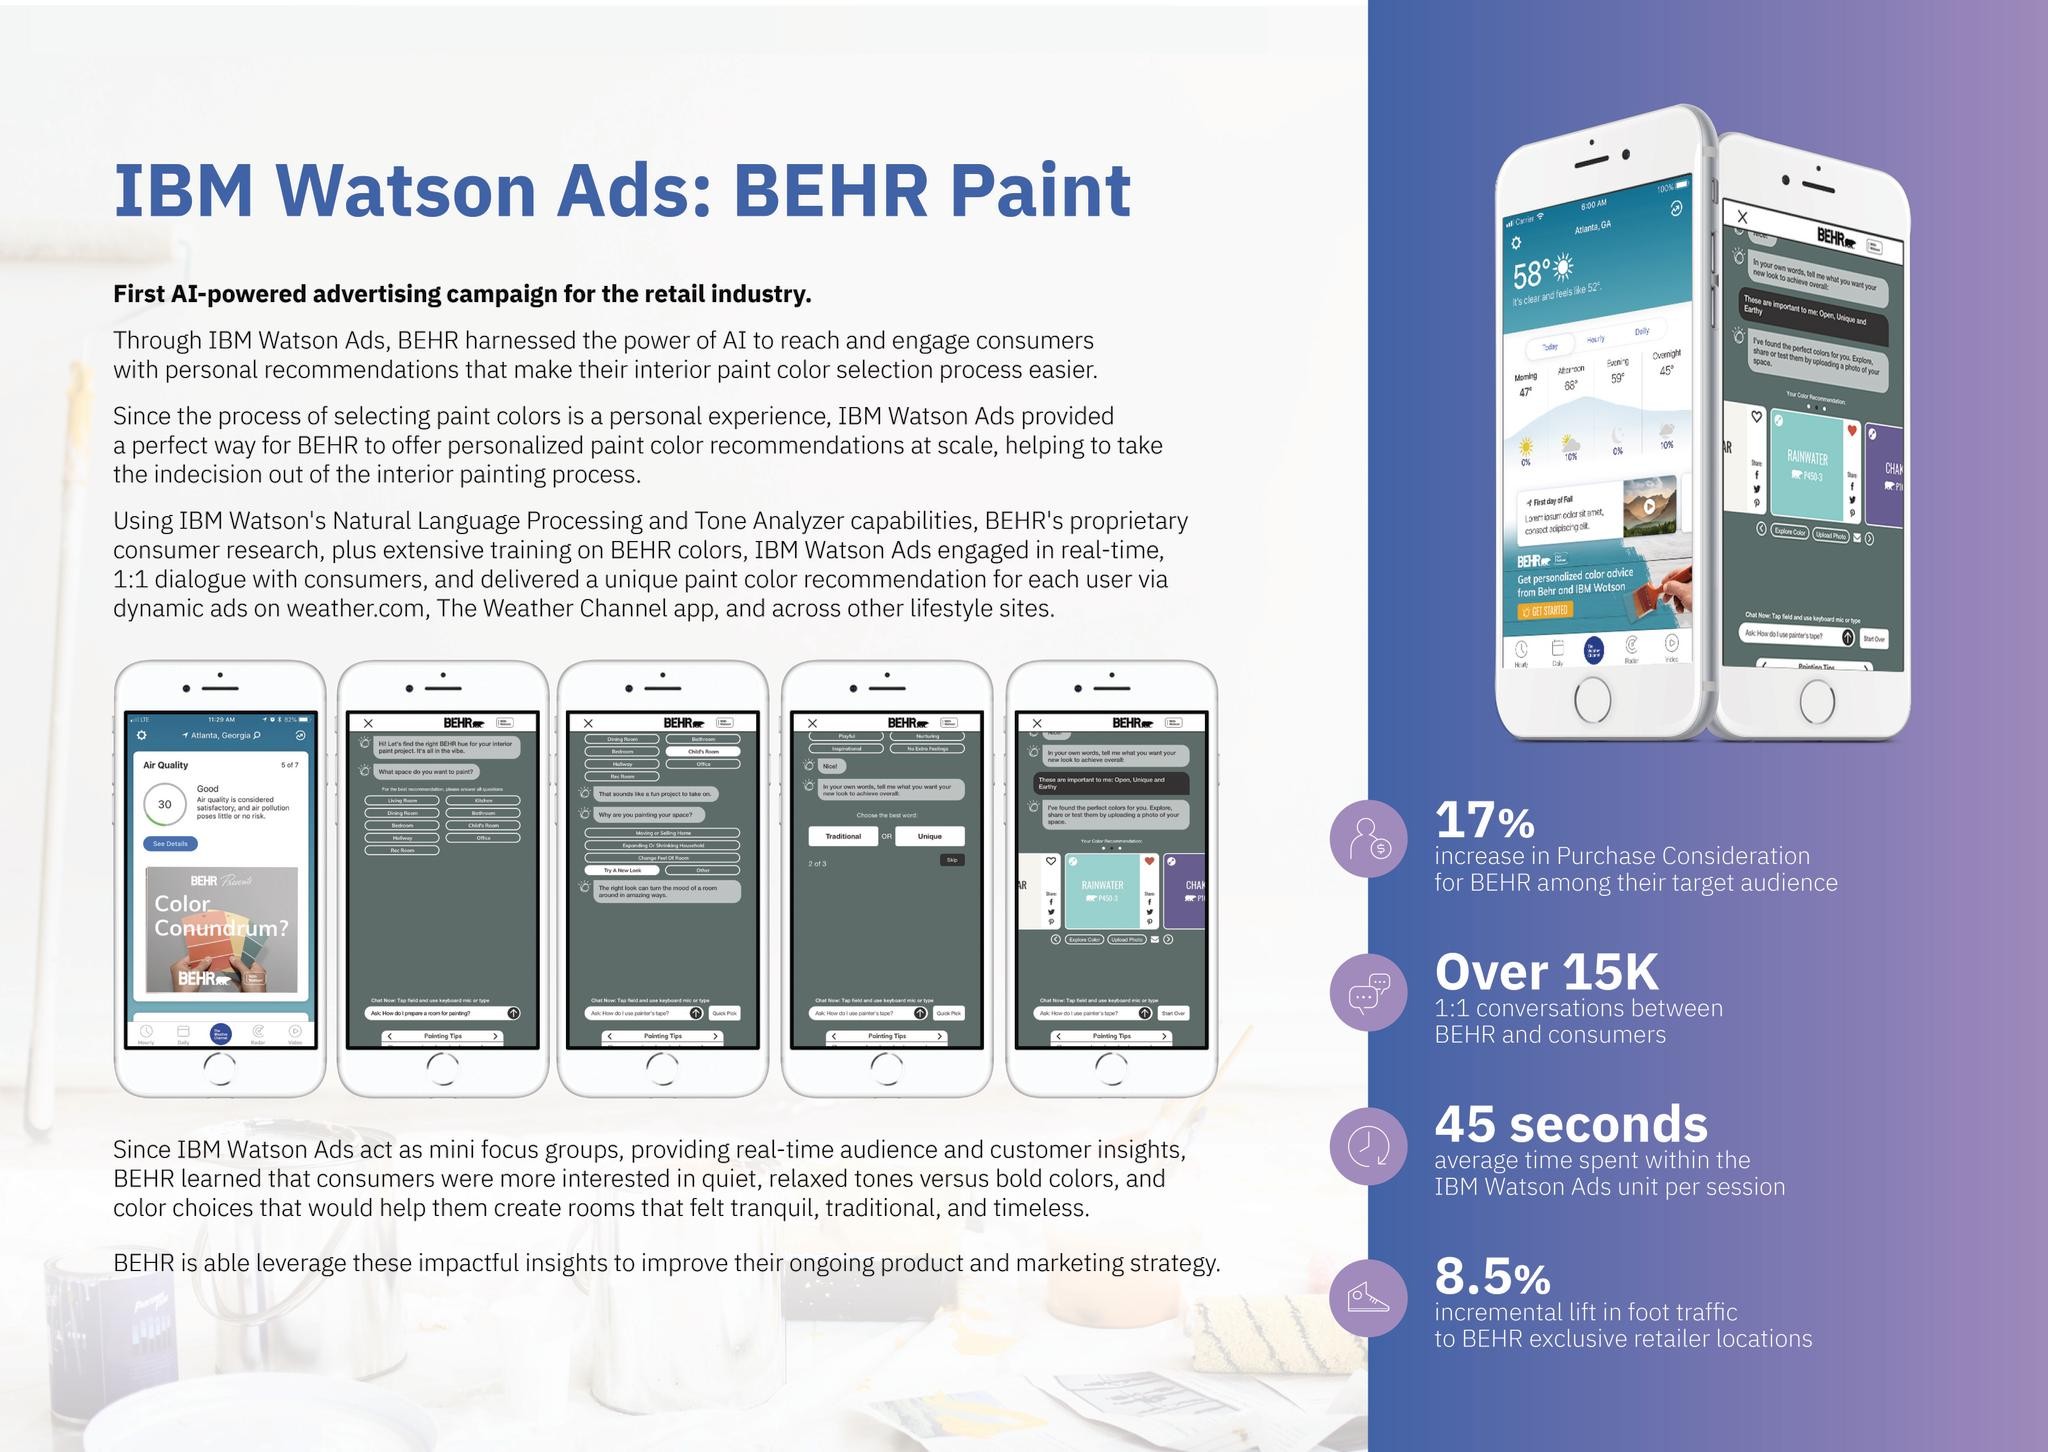 IBM WATSON ADS: BEHR PAINT